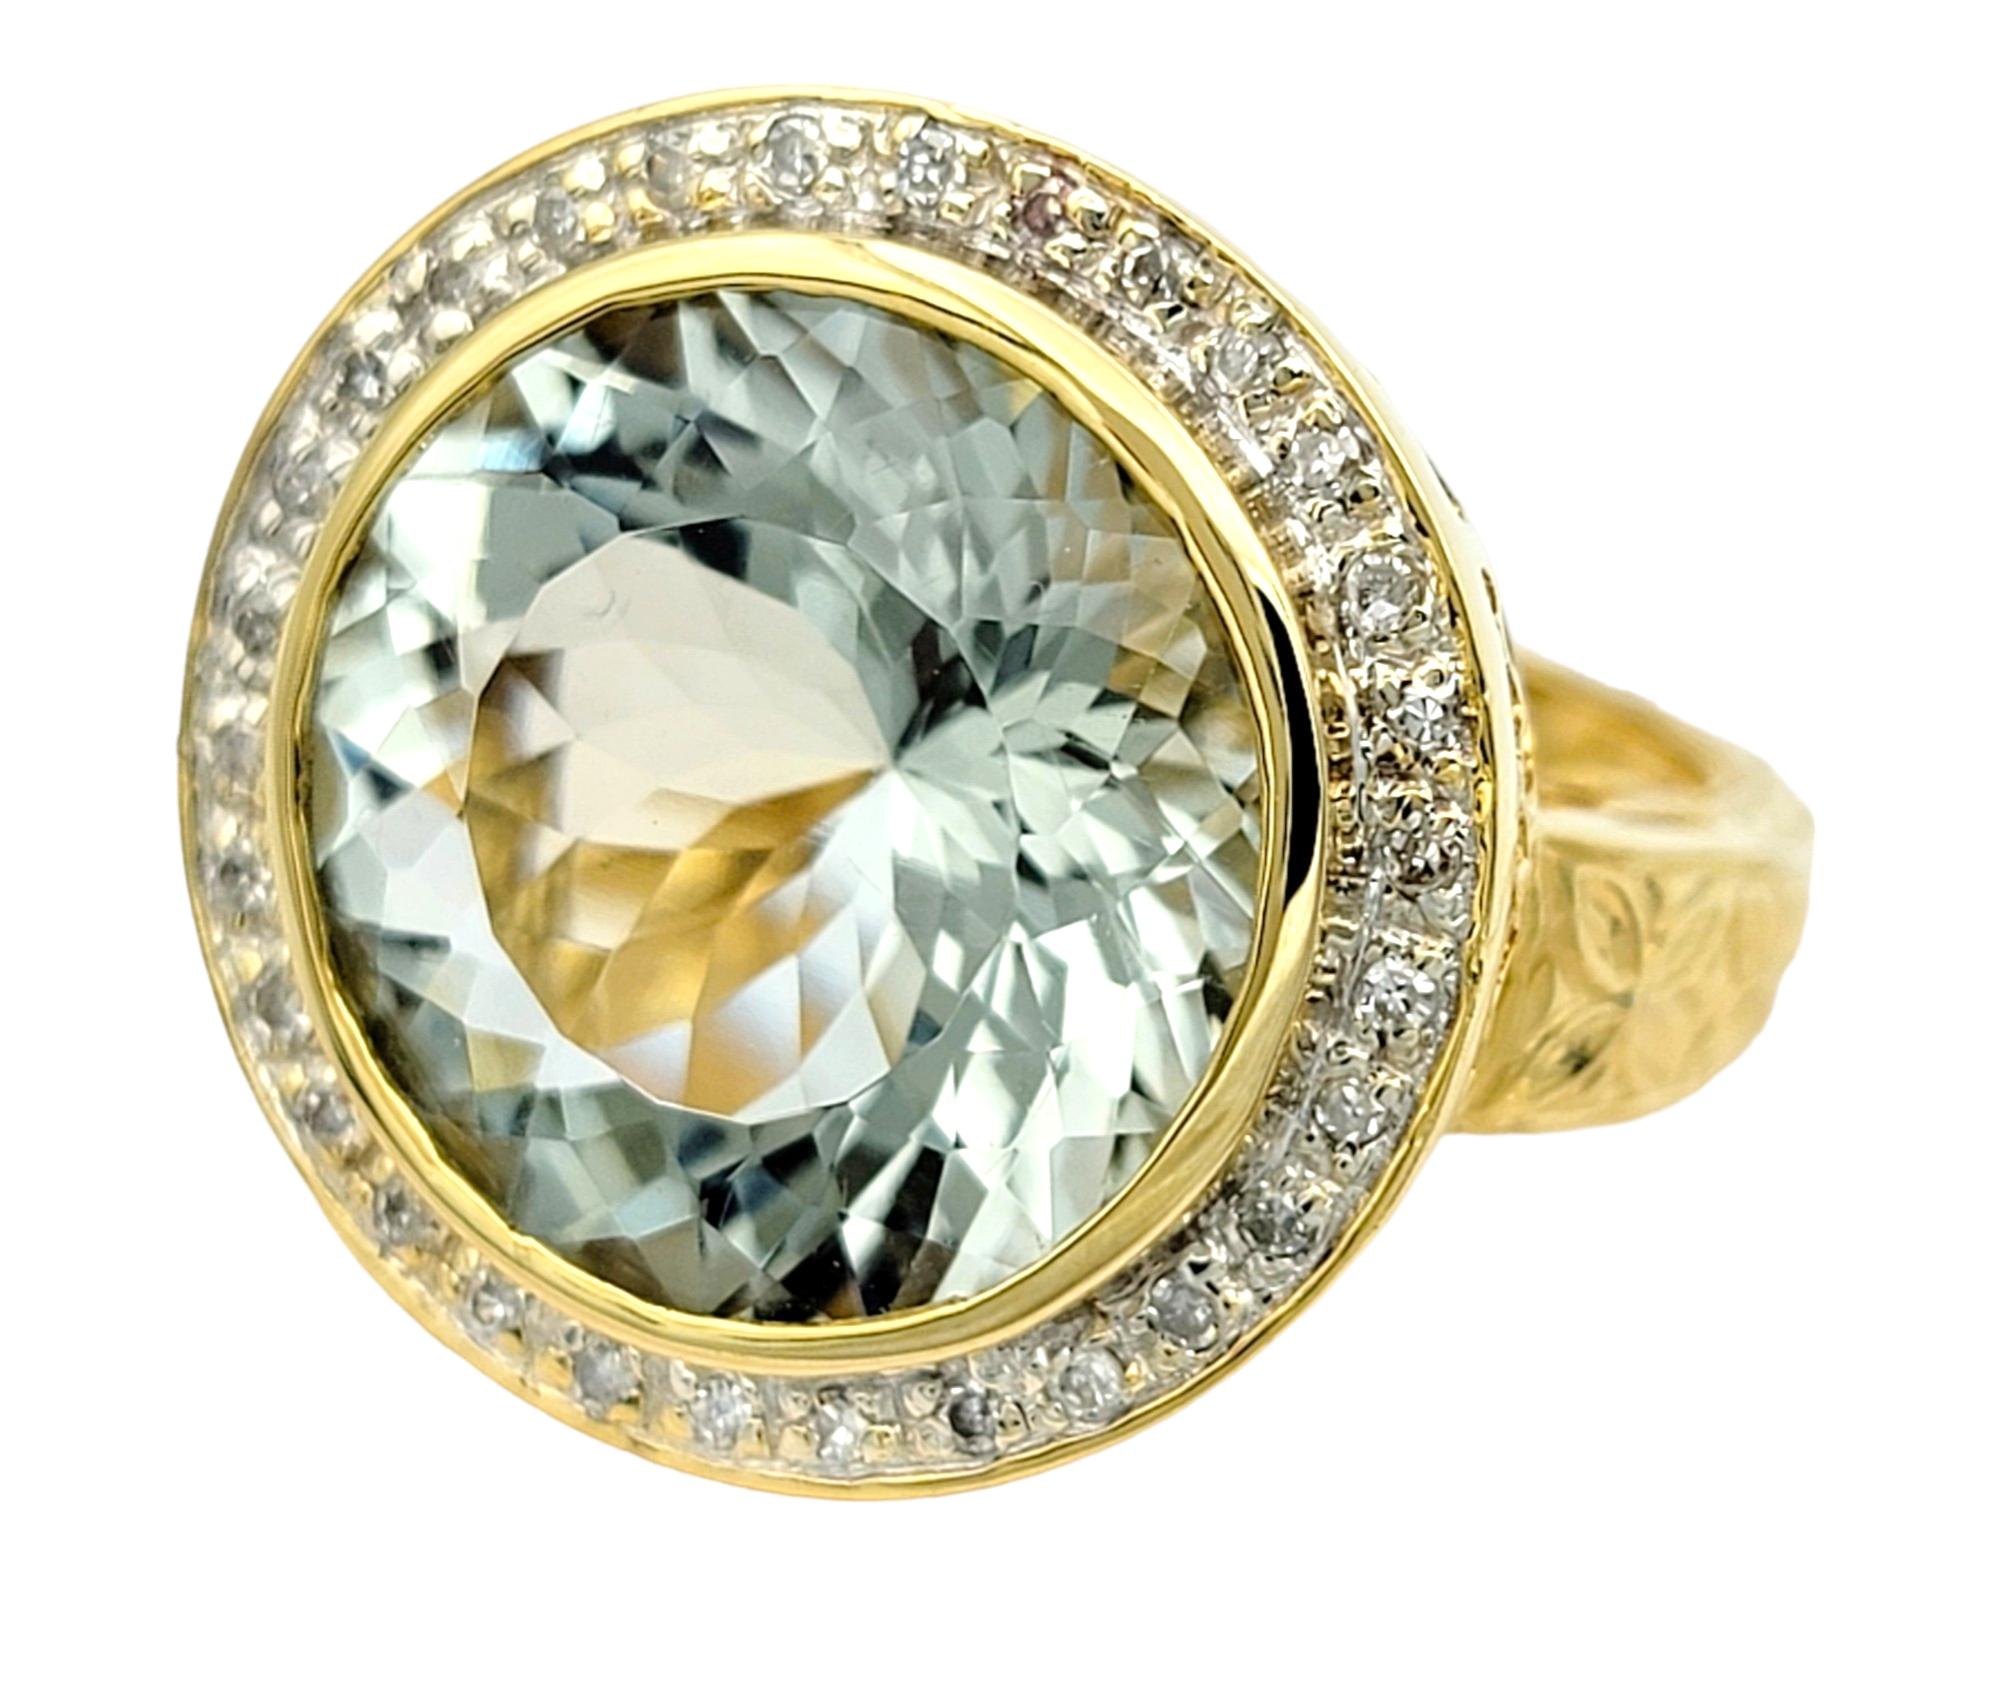 Taille de l'anneau : 5

Rayonnant d'une teinte envoûtante qui mêle les tons sereins du vert et du bleu, la pierre précieuse ronde prasiolite occupe le devant de la scène dans cette bague exquise. Sertie dans un élégant or blanc 14 carats, la